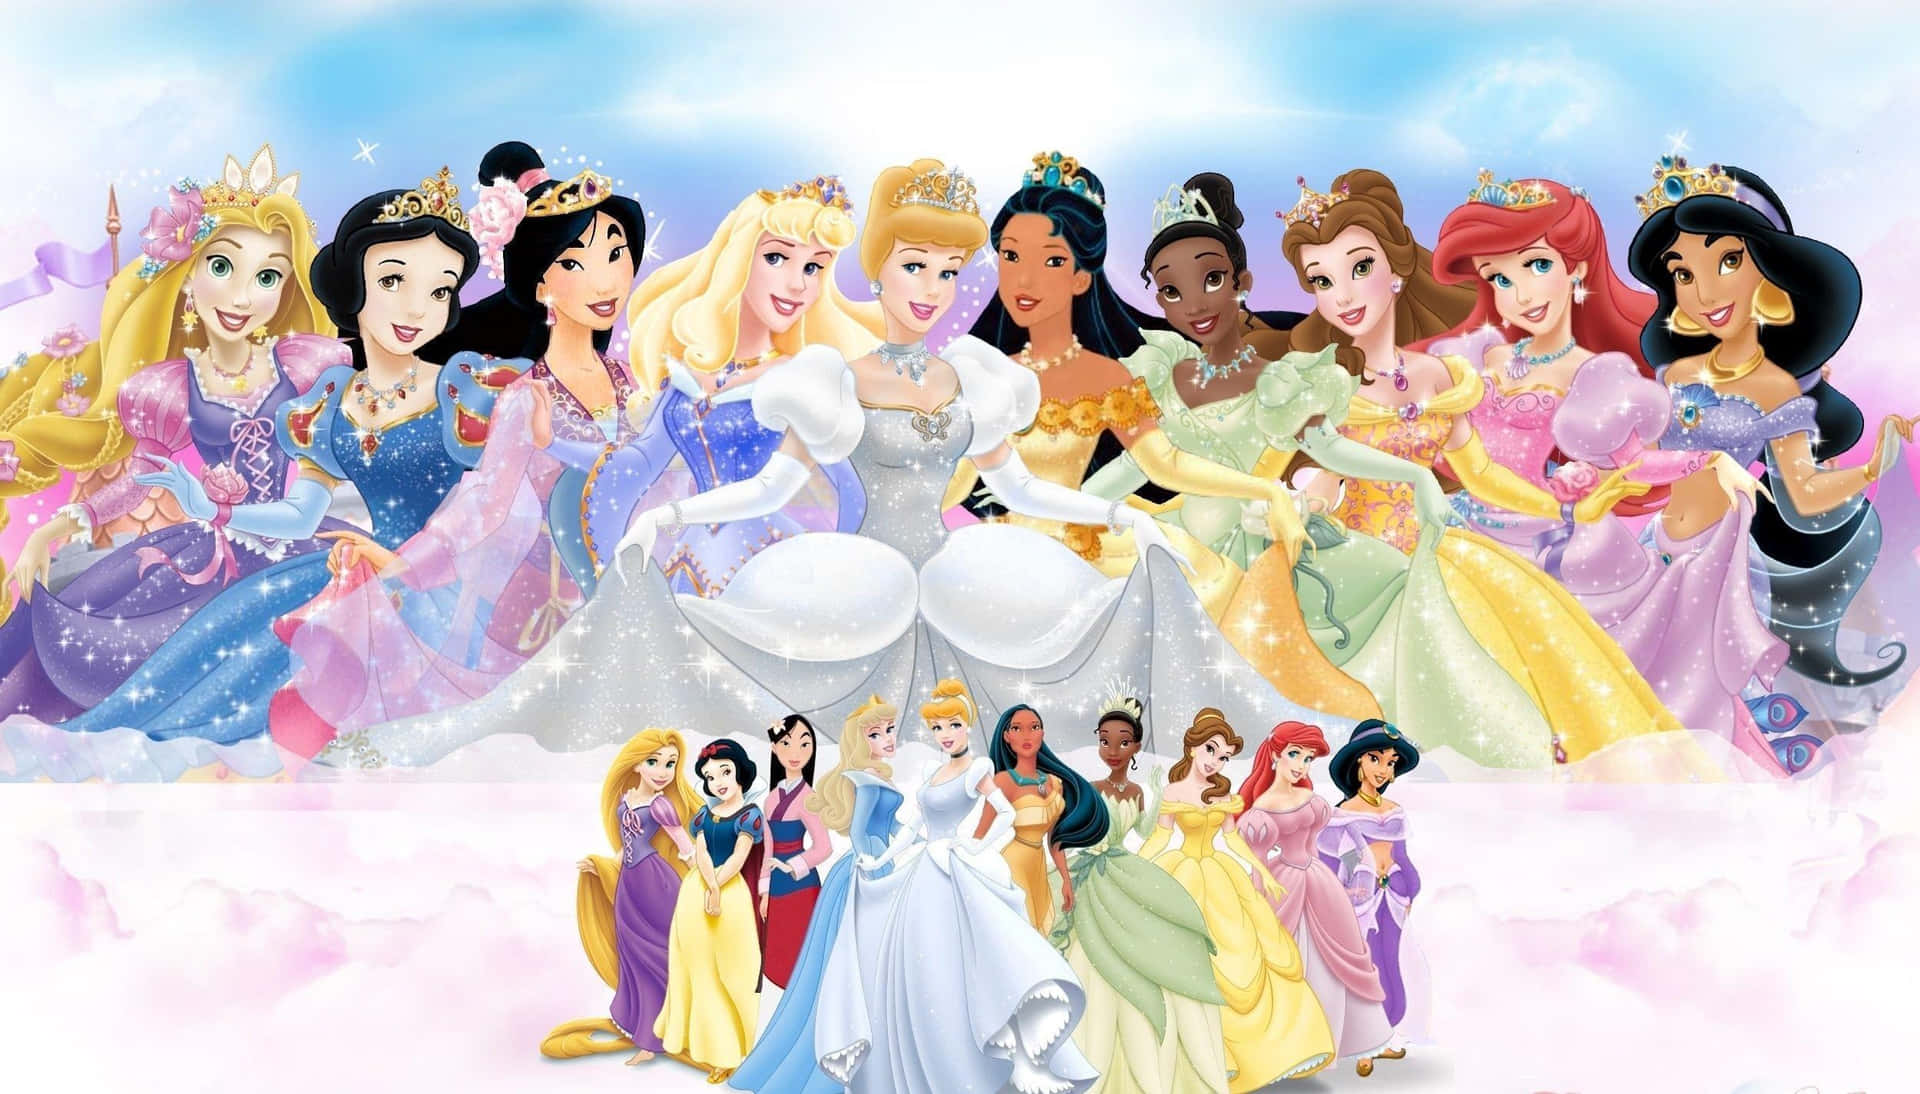 Melhorpapel De Parede Da Disney: Várias Princesas Da Disney.